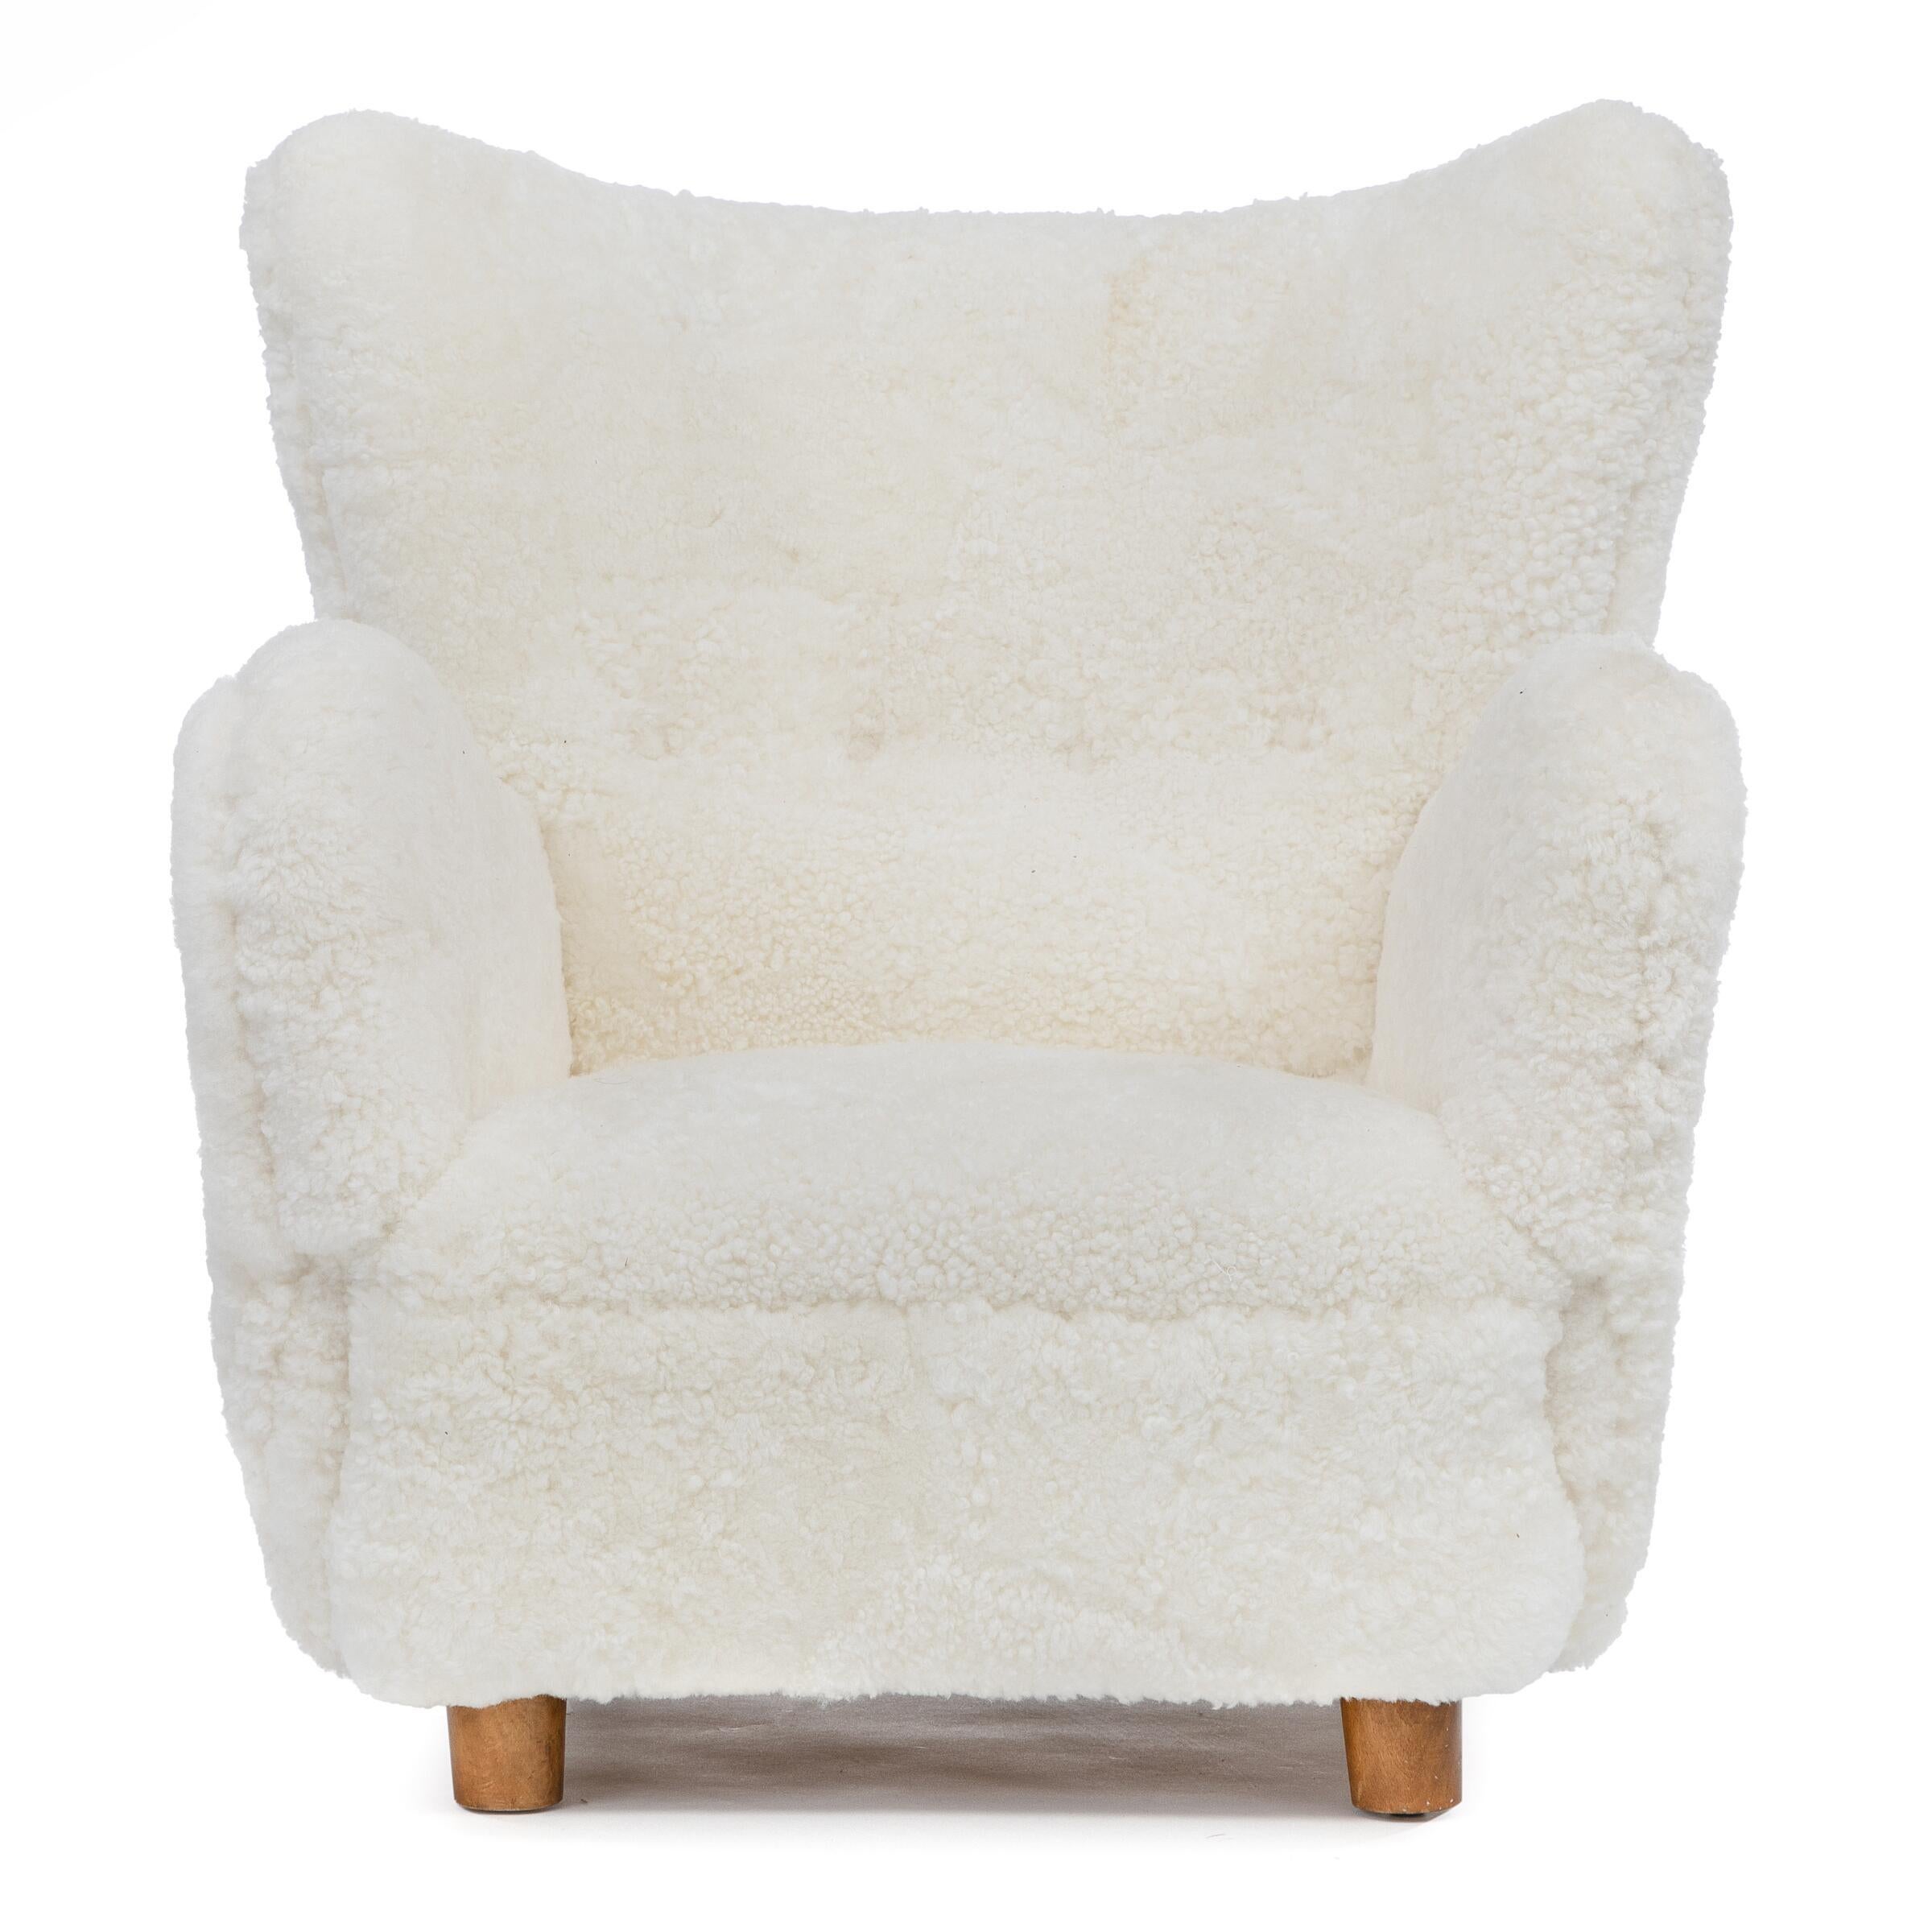 Ébéniste danois : Magnifique fauteuil avec des pieds en hêtre teinté. Côtés, assise et dossier garnis de laine d'agneau blanche. Fabriqué dans les années 1940
N'hésitez pas à demander un tarif de livraison et nous ferons de notre mieux pour